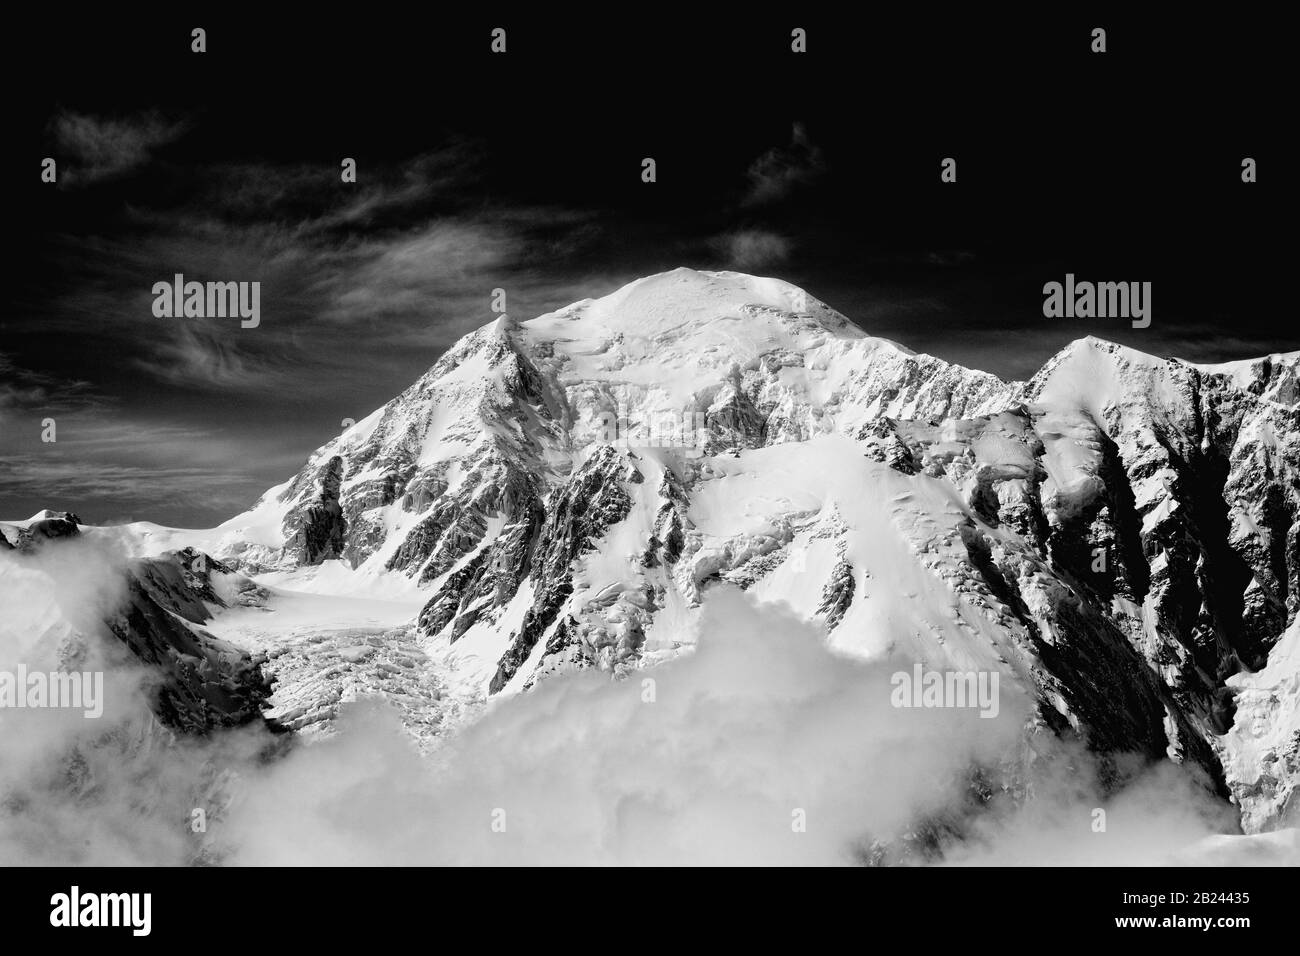 Denali NATIONAL PARK, États-Unis - 06 août 2008 - vue aérienne du Mont McKinley ou Denali (le Grand) en Alaska est le plus haut sommet de montagne en Amérique du Nord Banque D'Images